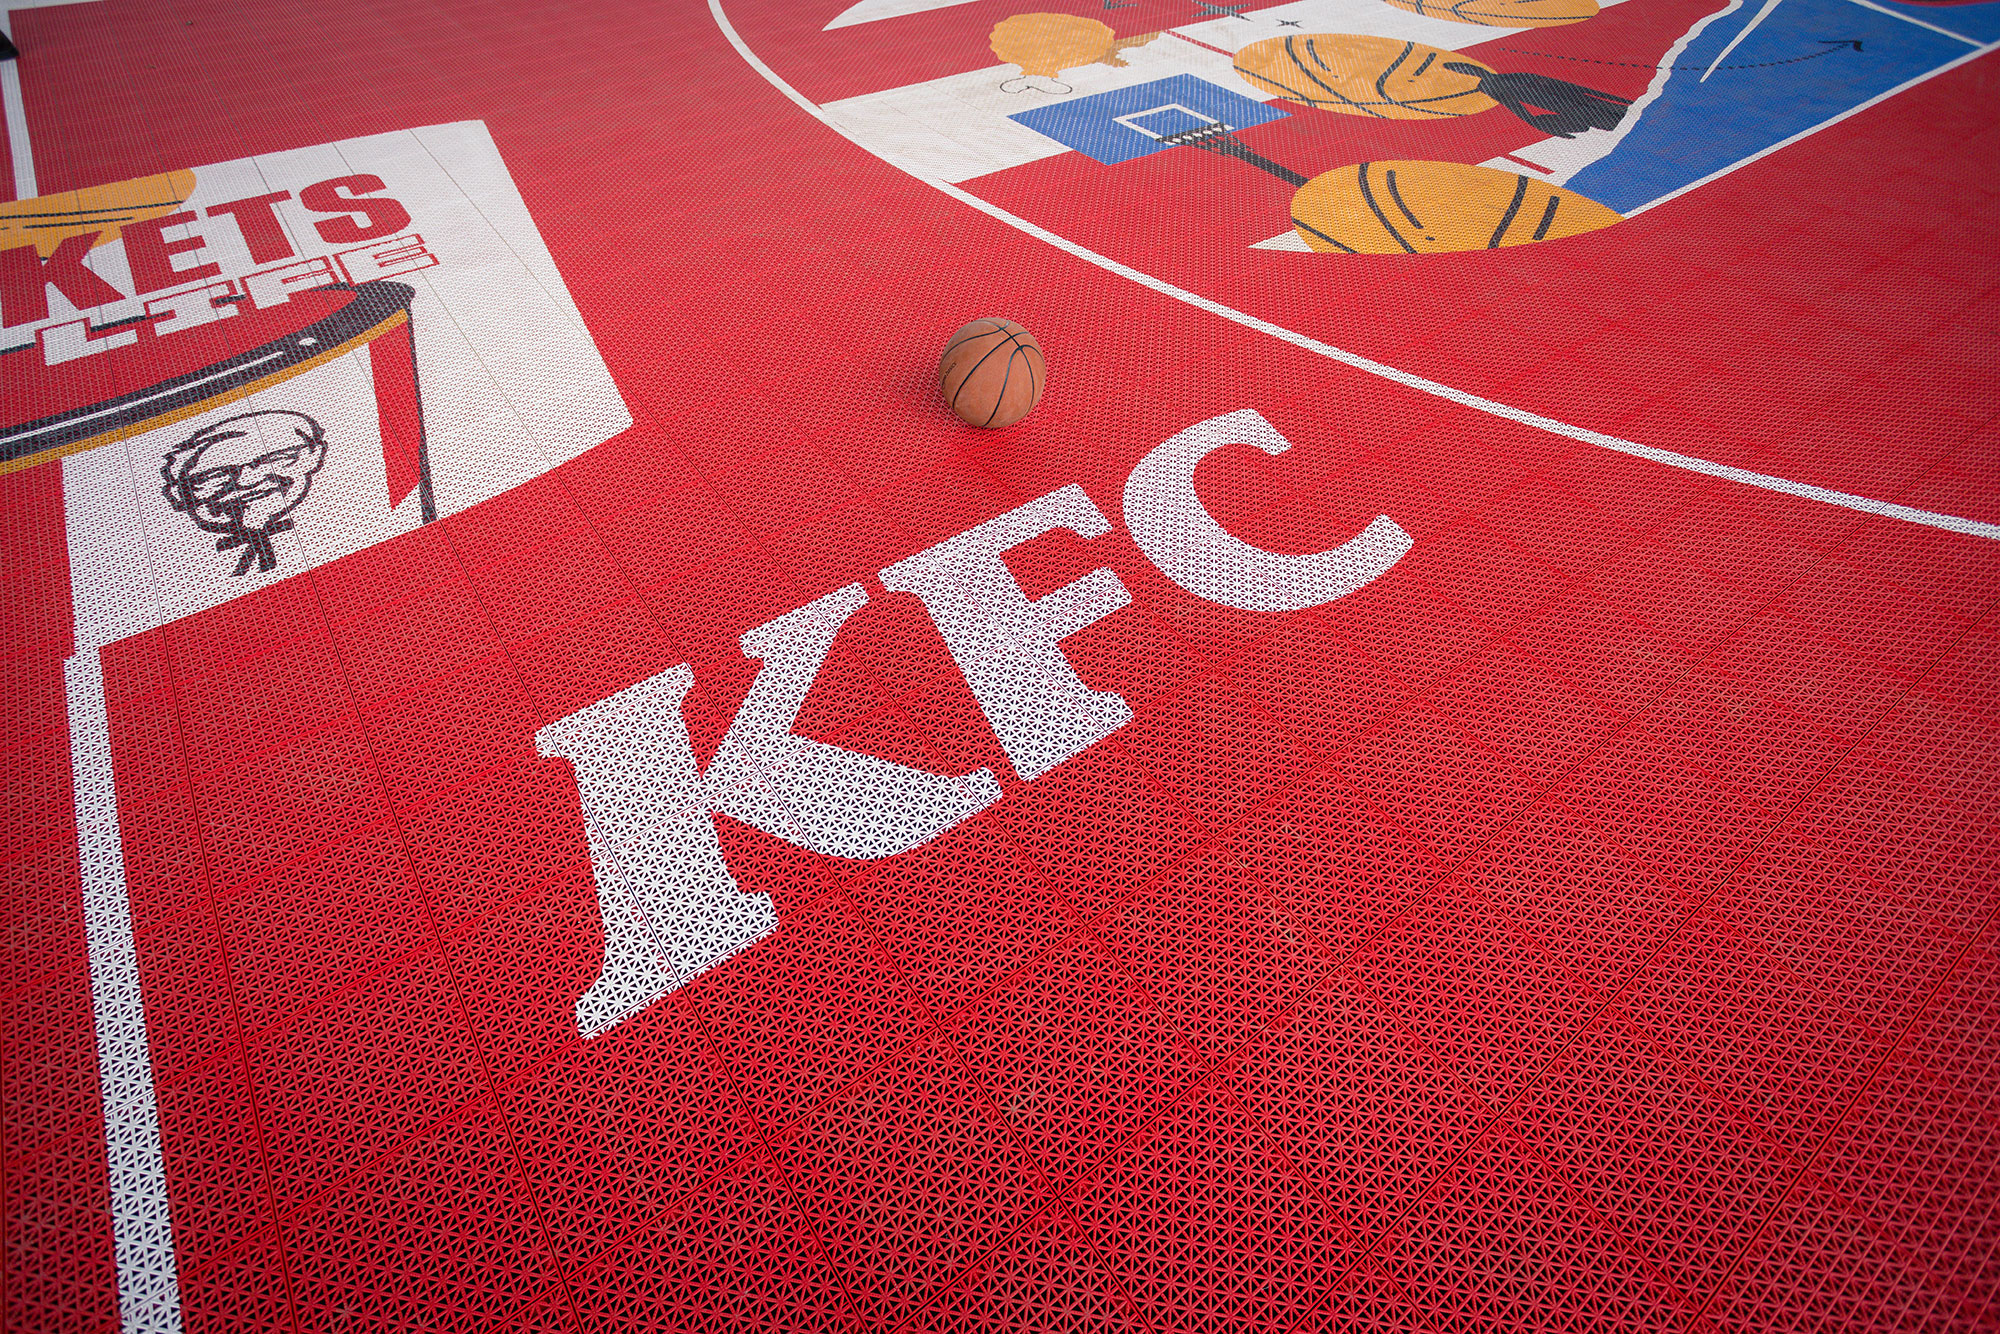 KFCourt-Winter-Basketball-Court-Surface